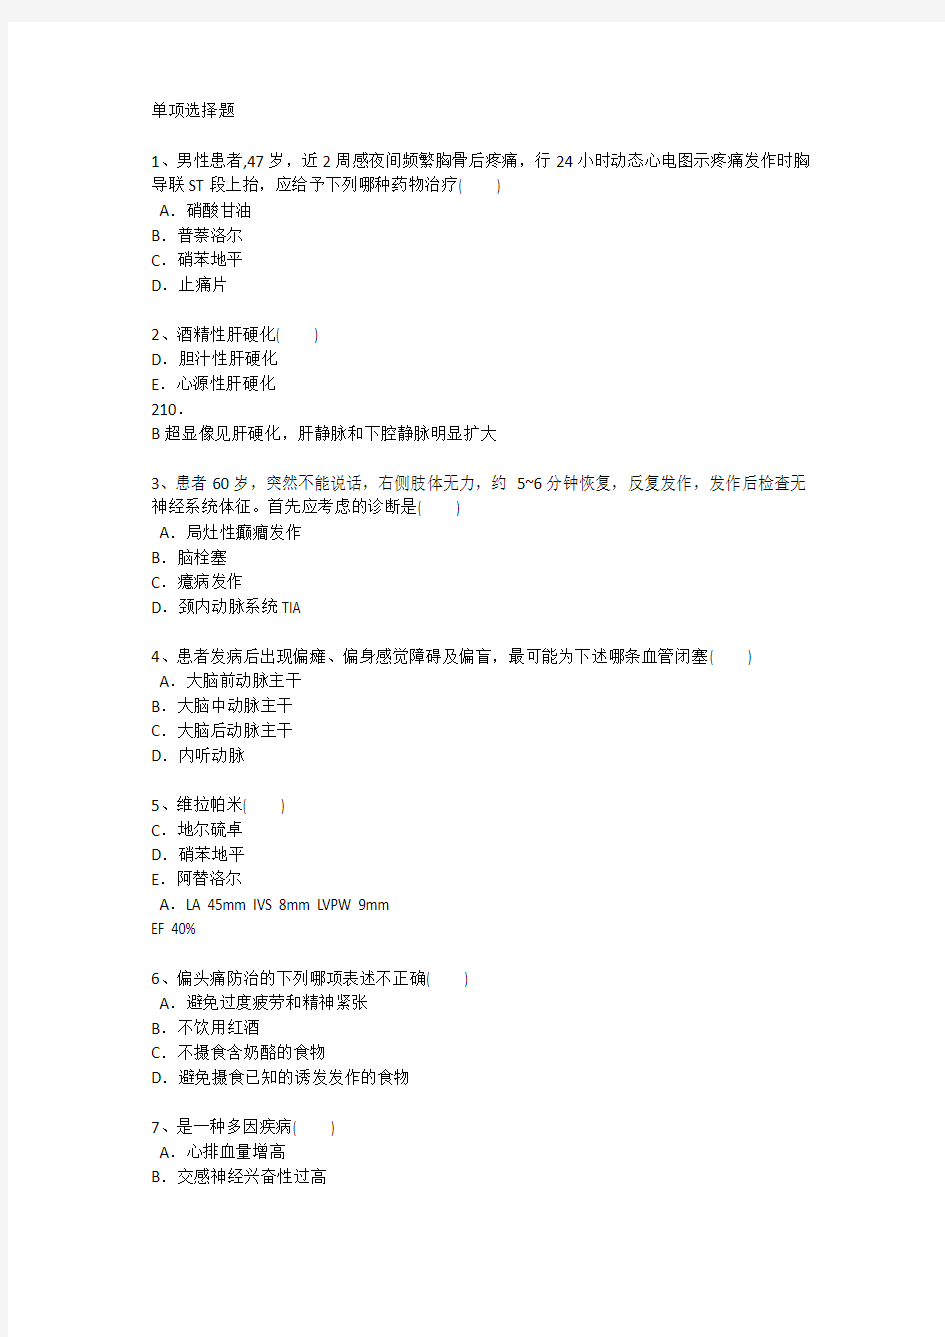 上海护理资格试题详解每日一练(2016.12.23)